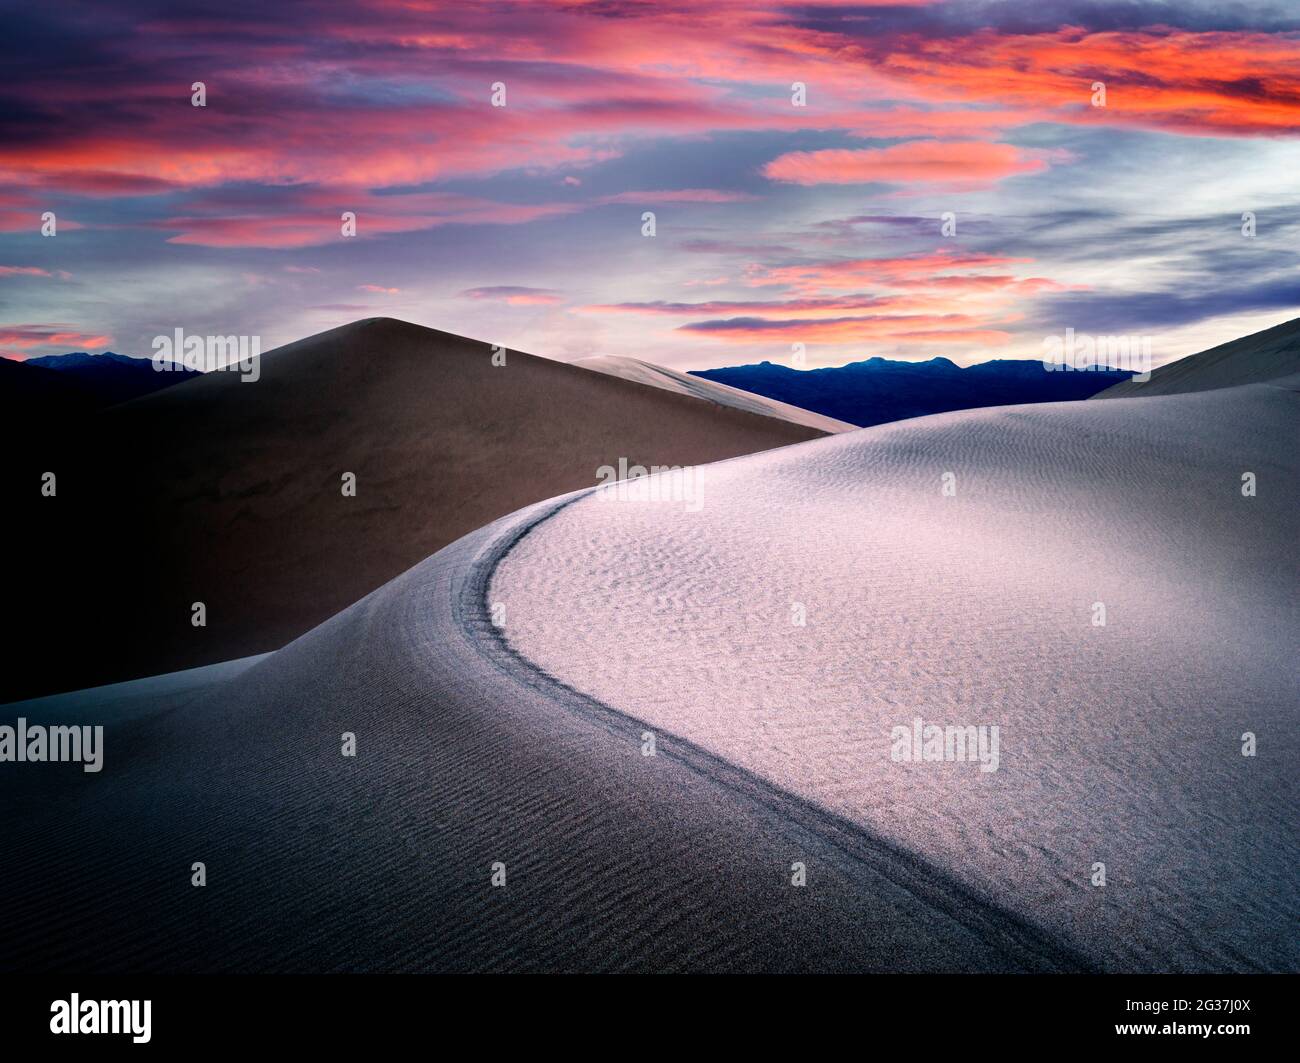 Sanddünen und Sonnenaufgang in Death Valley Nationalpark, Kalifornien. Himmel wurde hinzugefügt Stockfoto